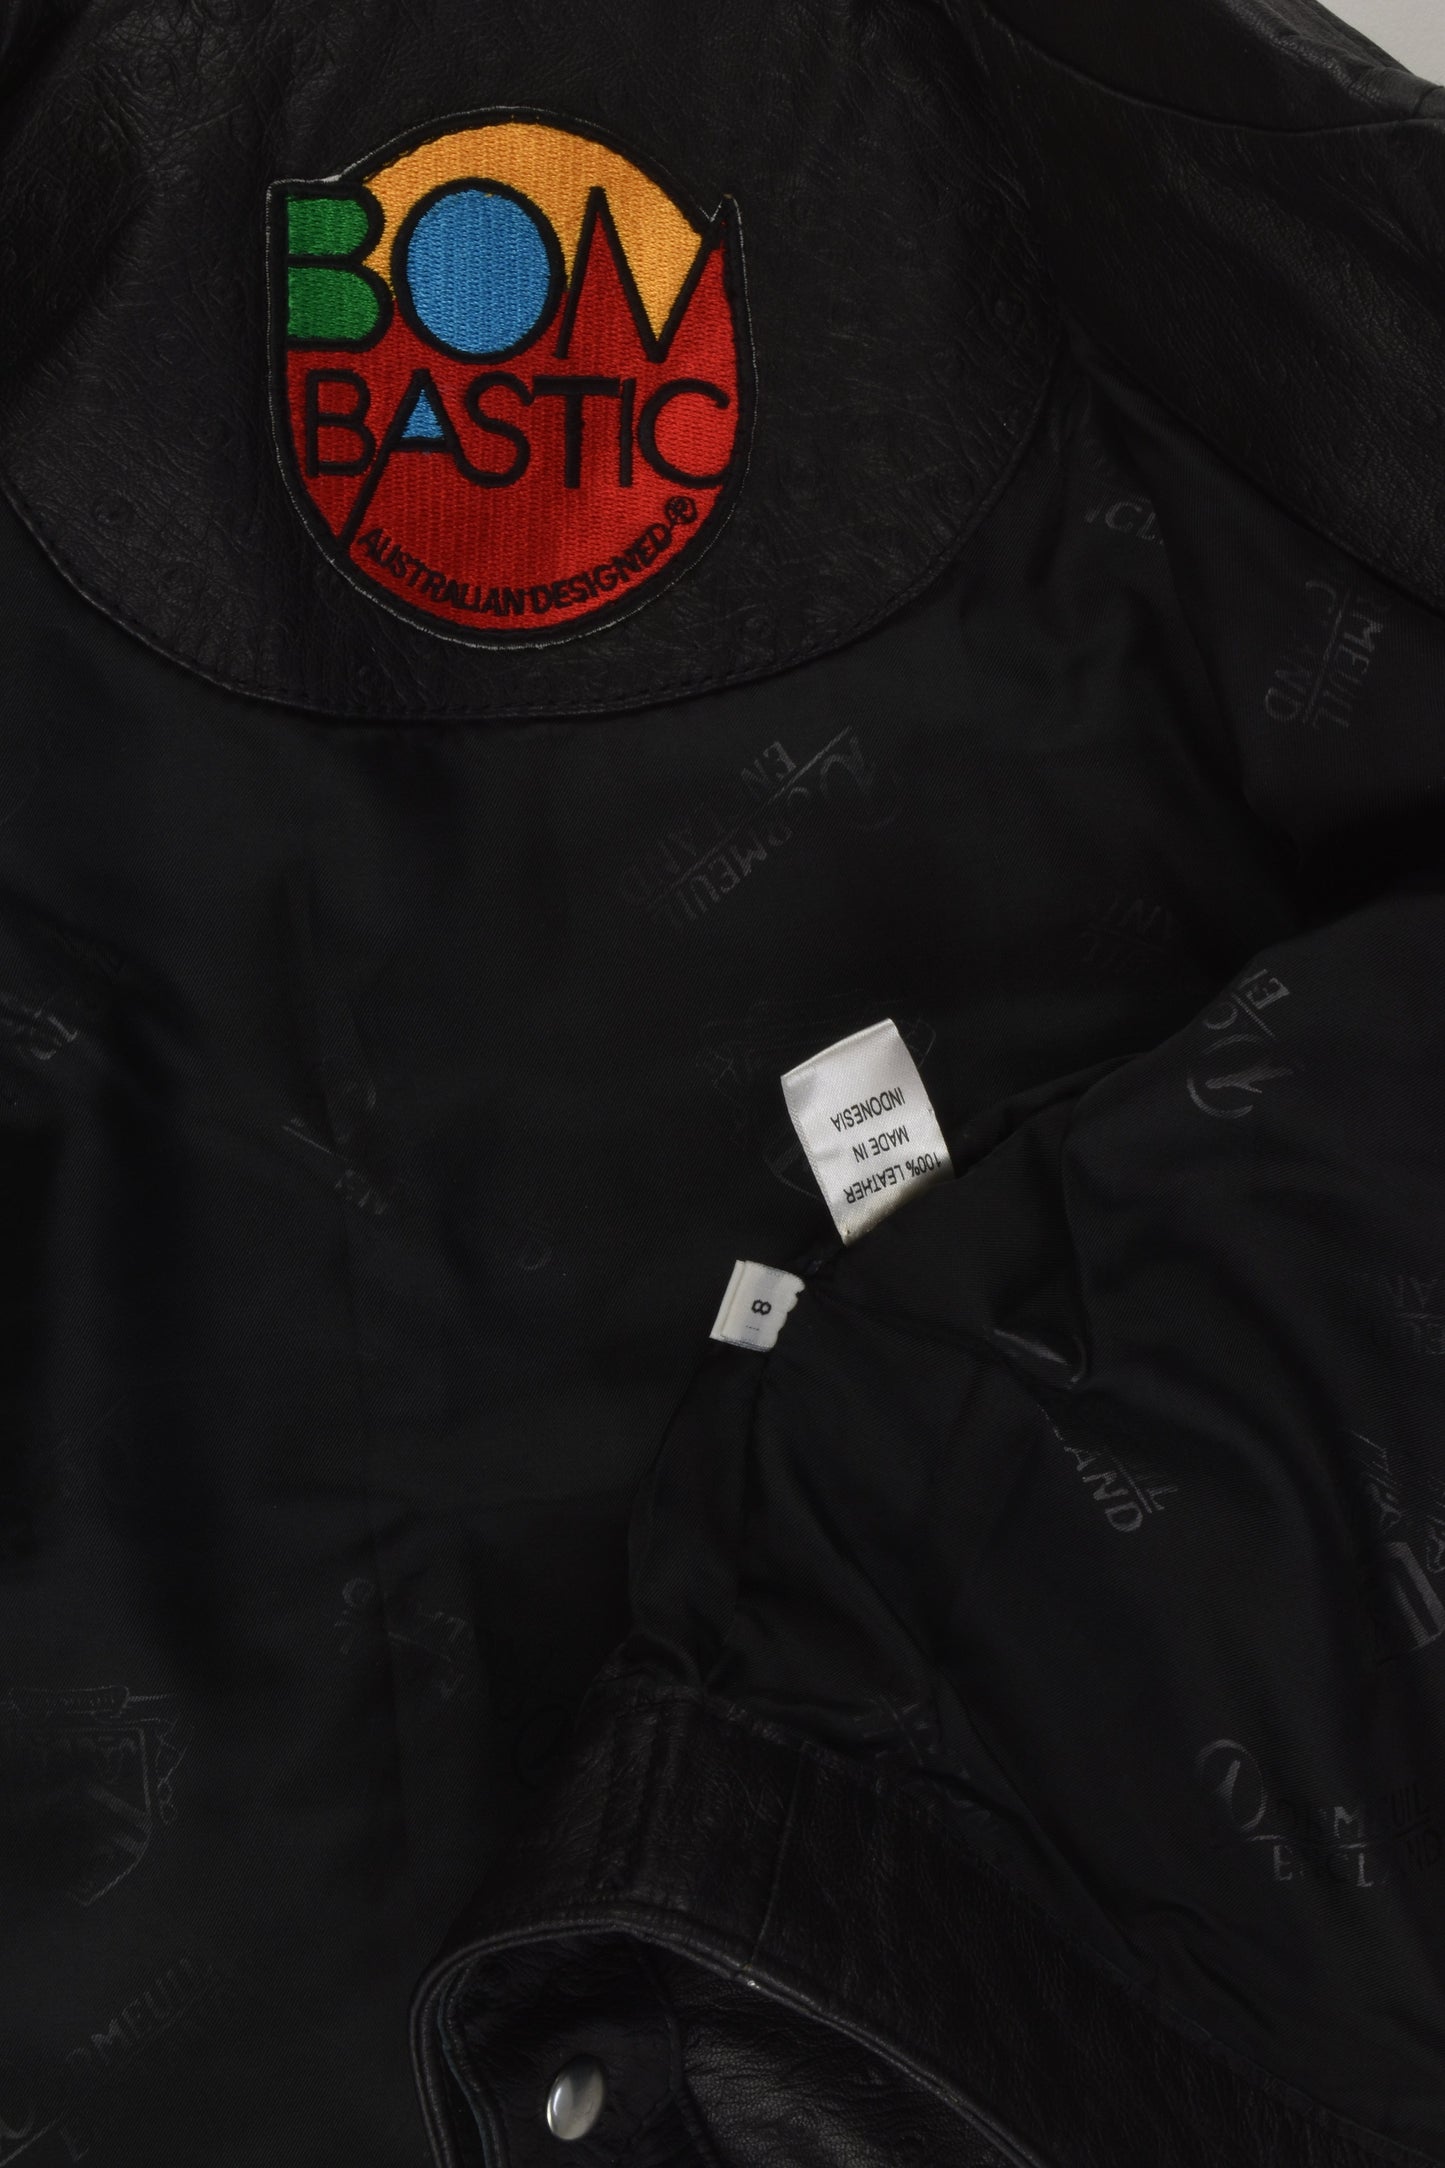 Bombastic Size 8 Leather Jacket